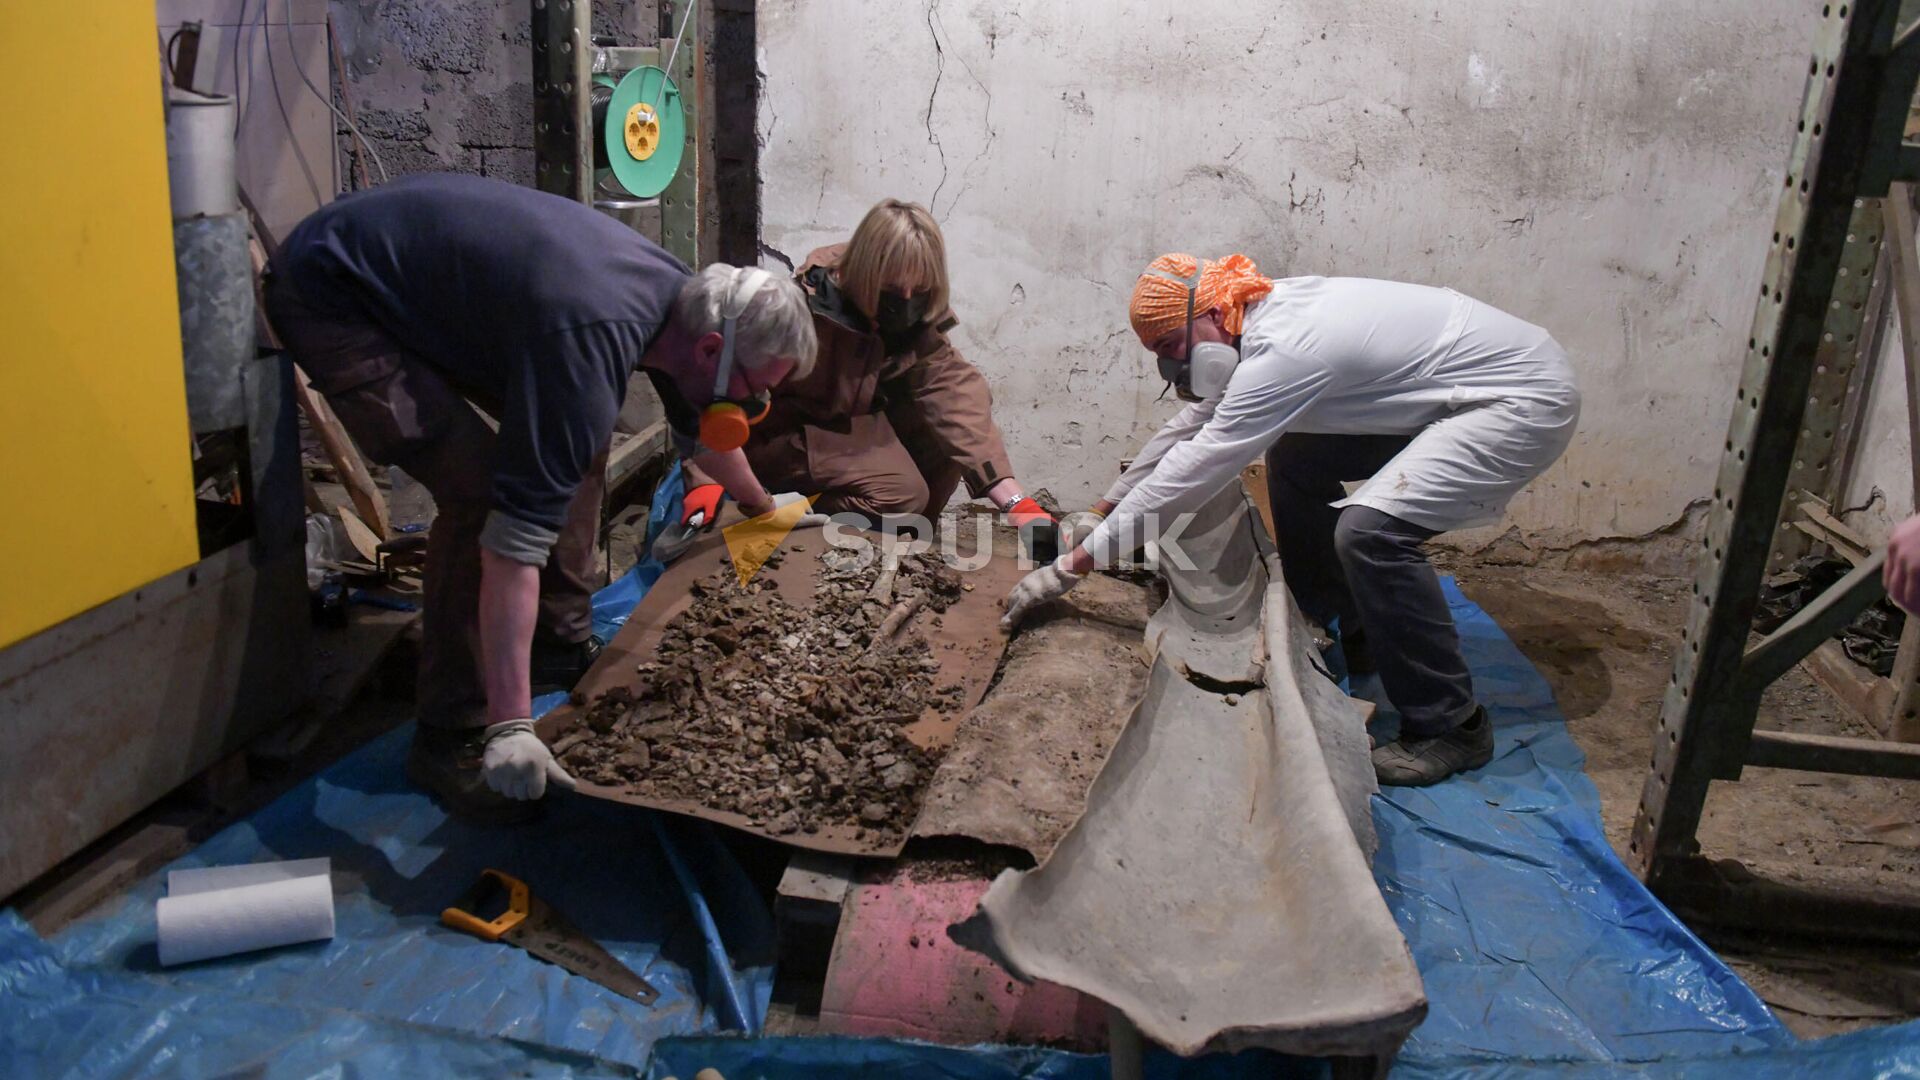 Ученые вскрыли свинцовый саркофаг, найденный в городище Гюэнос - Sputnik Аҧсны, 1920, 21.10.2021